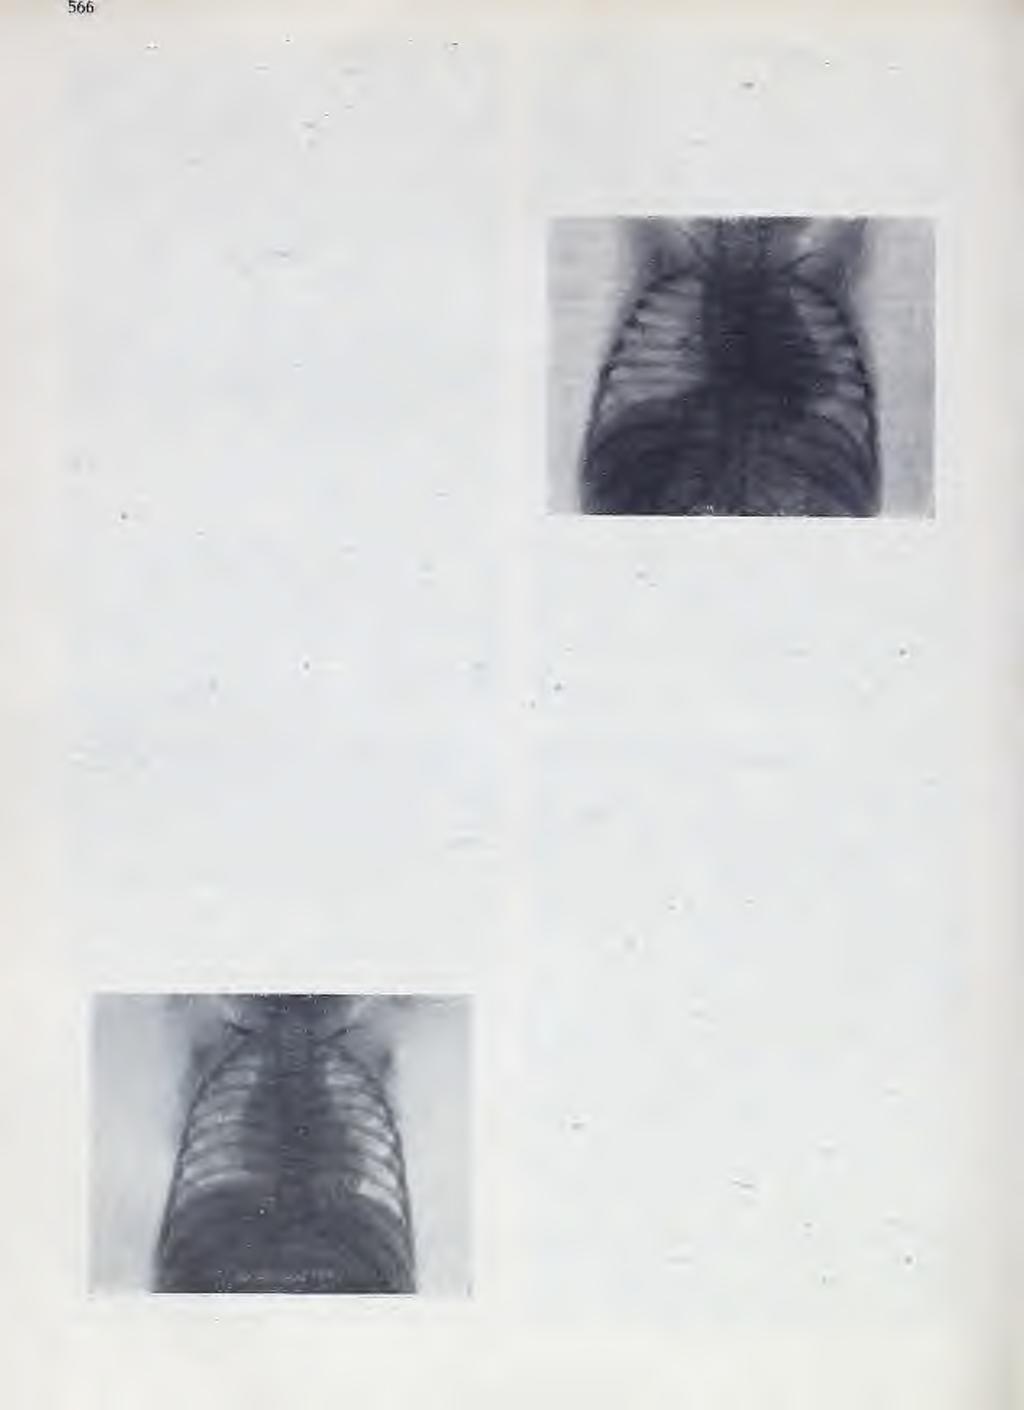 glavnih bronhusa, i 2.) ö s 1 a b 1j e n o ali poostreno disanje govori za kompresiju dovodnog bronhusa. Ekspiratorni i inspiratorni stertor.